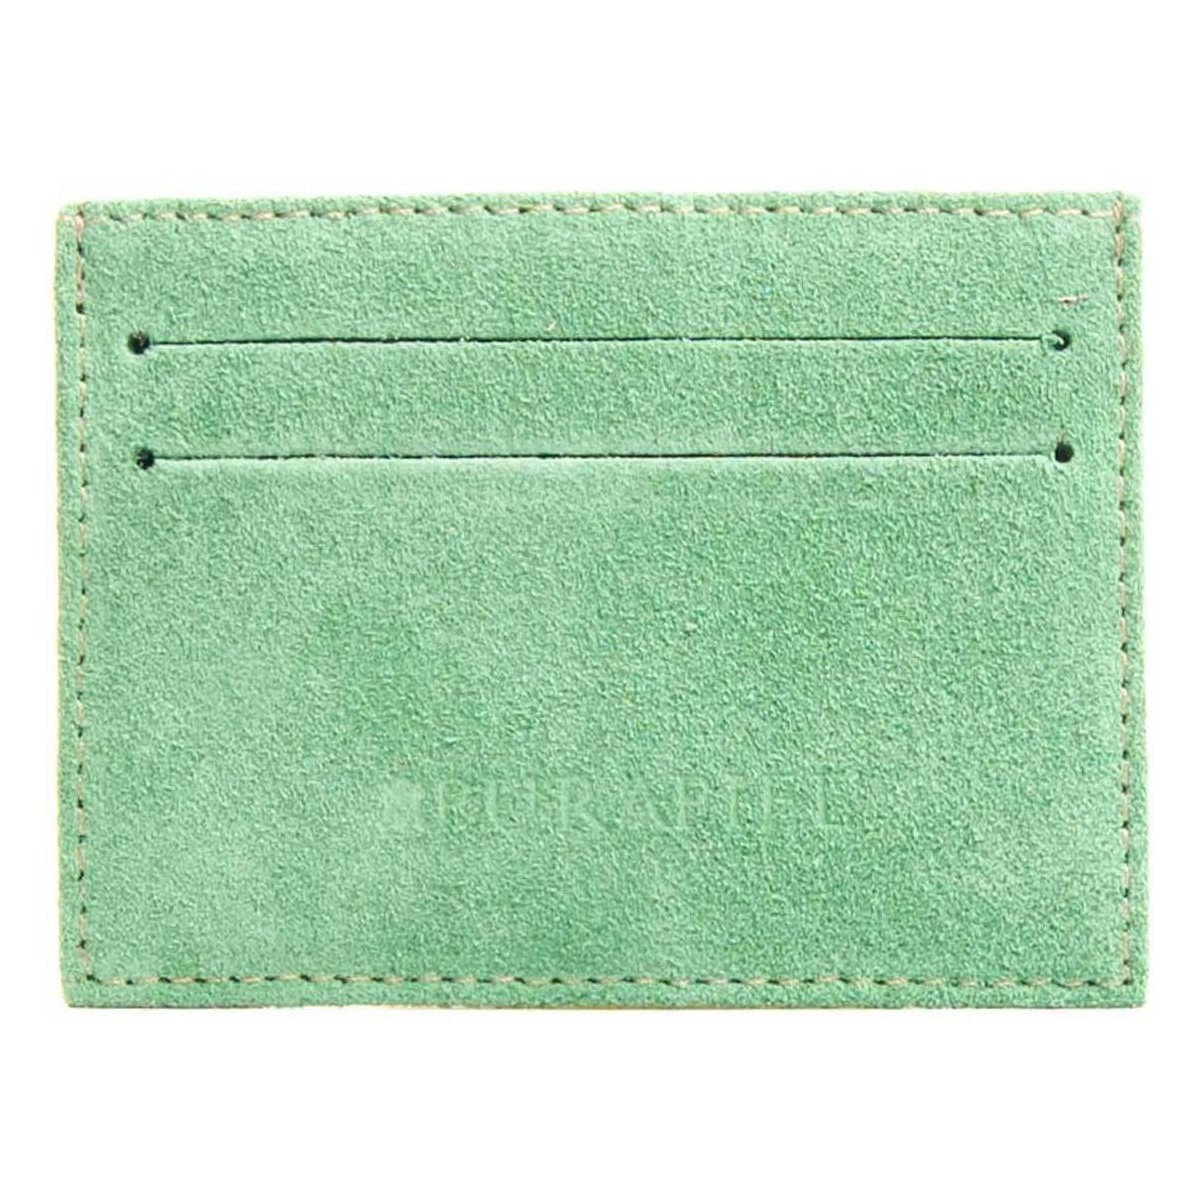 Taschen Portemonnaie Purapiel 74229 Grün